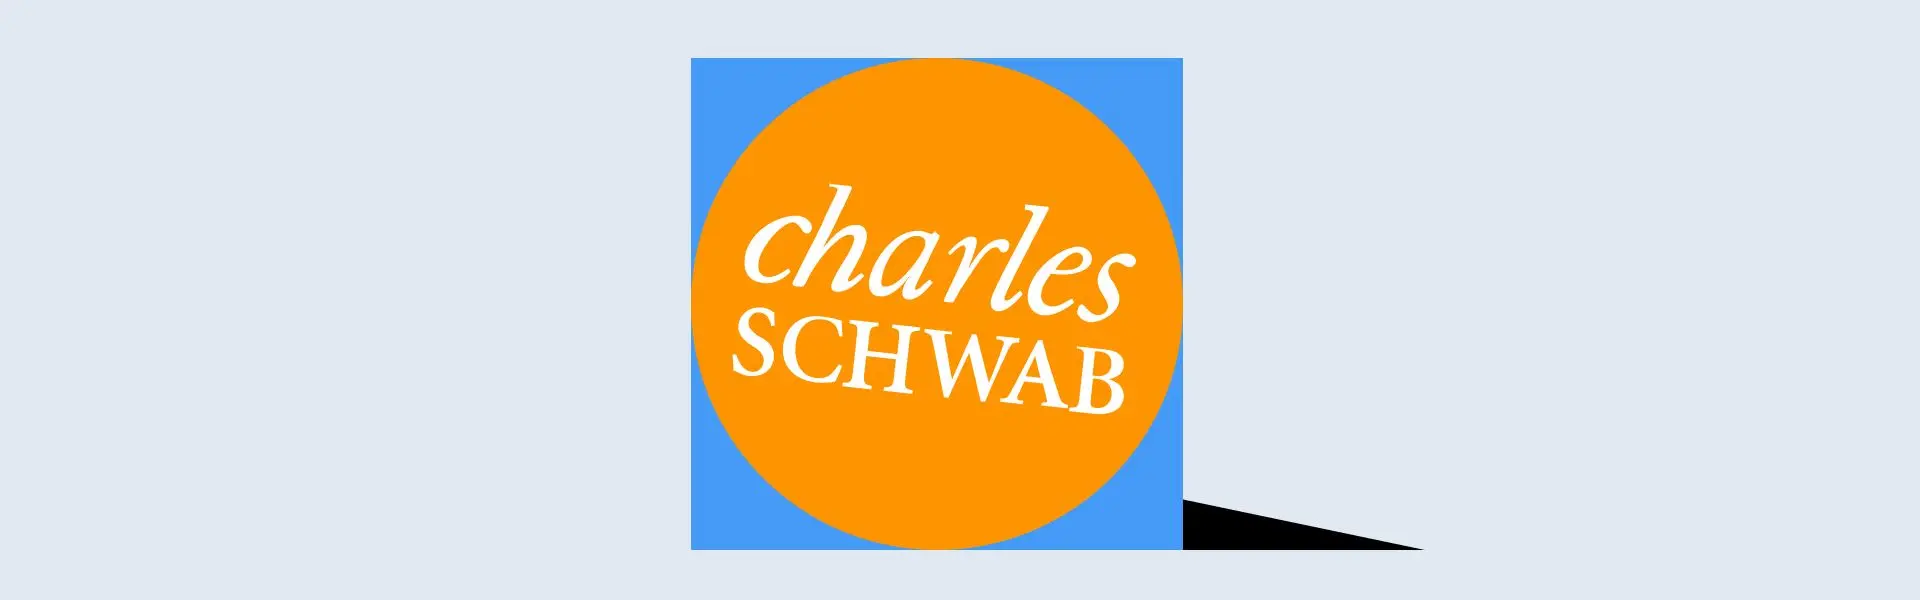 Прогнозують, що компанія Charles Schwab запустить біткоїн-ETF, зазначають експерти.